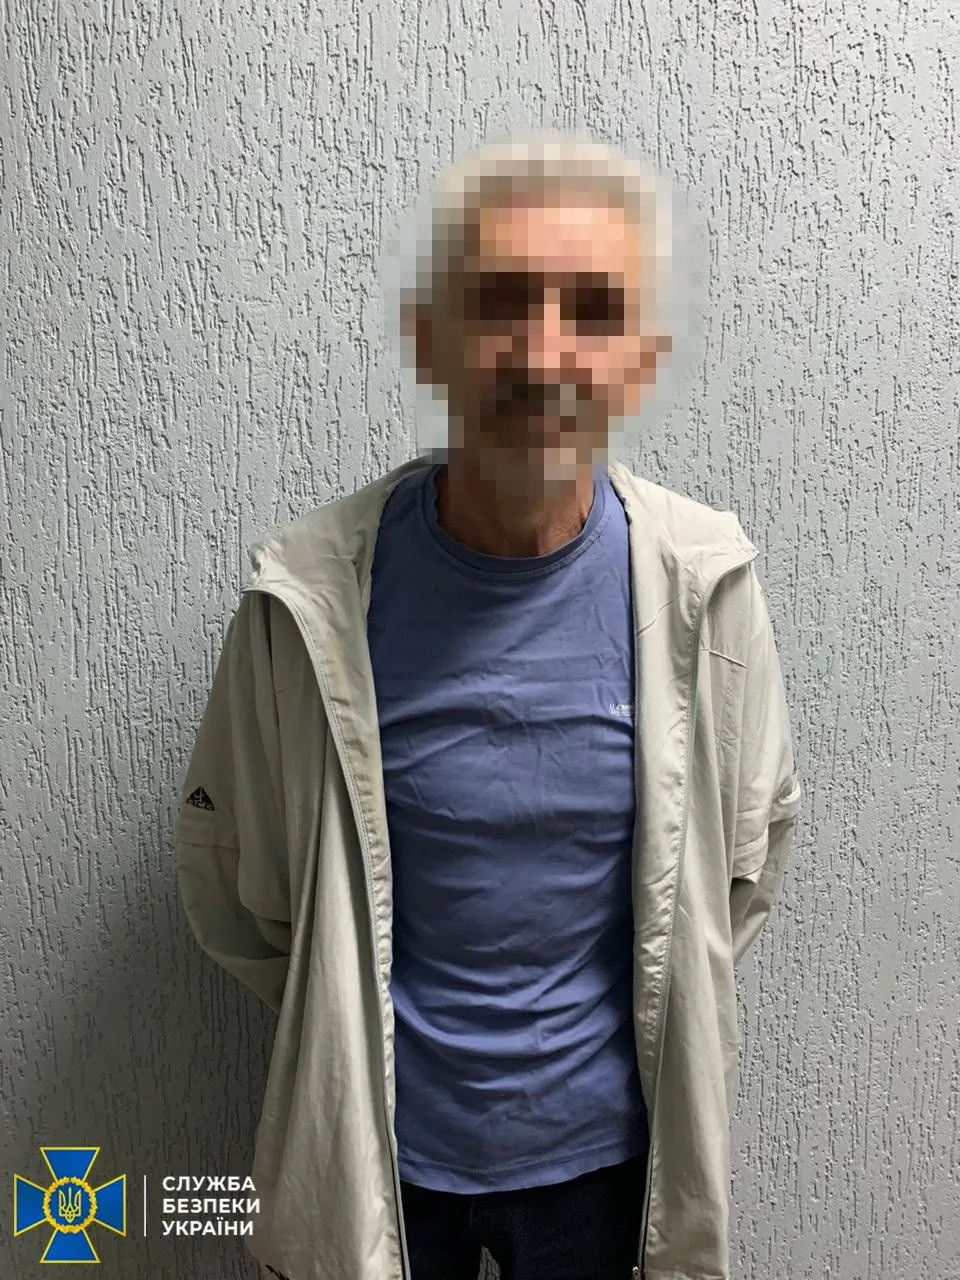 СБУ затримала терориста, який захоплював адмінбудівлі на Луганщині